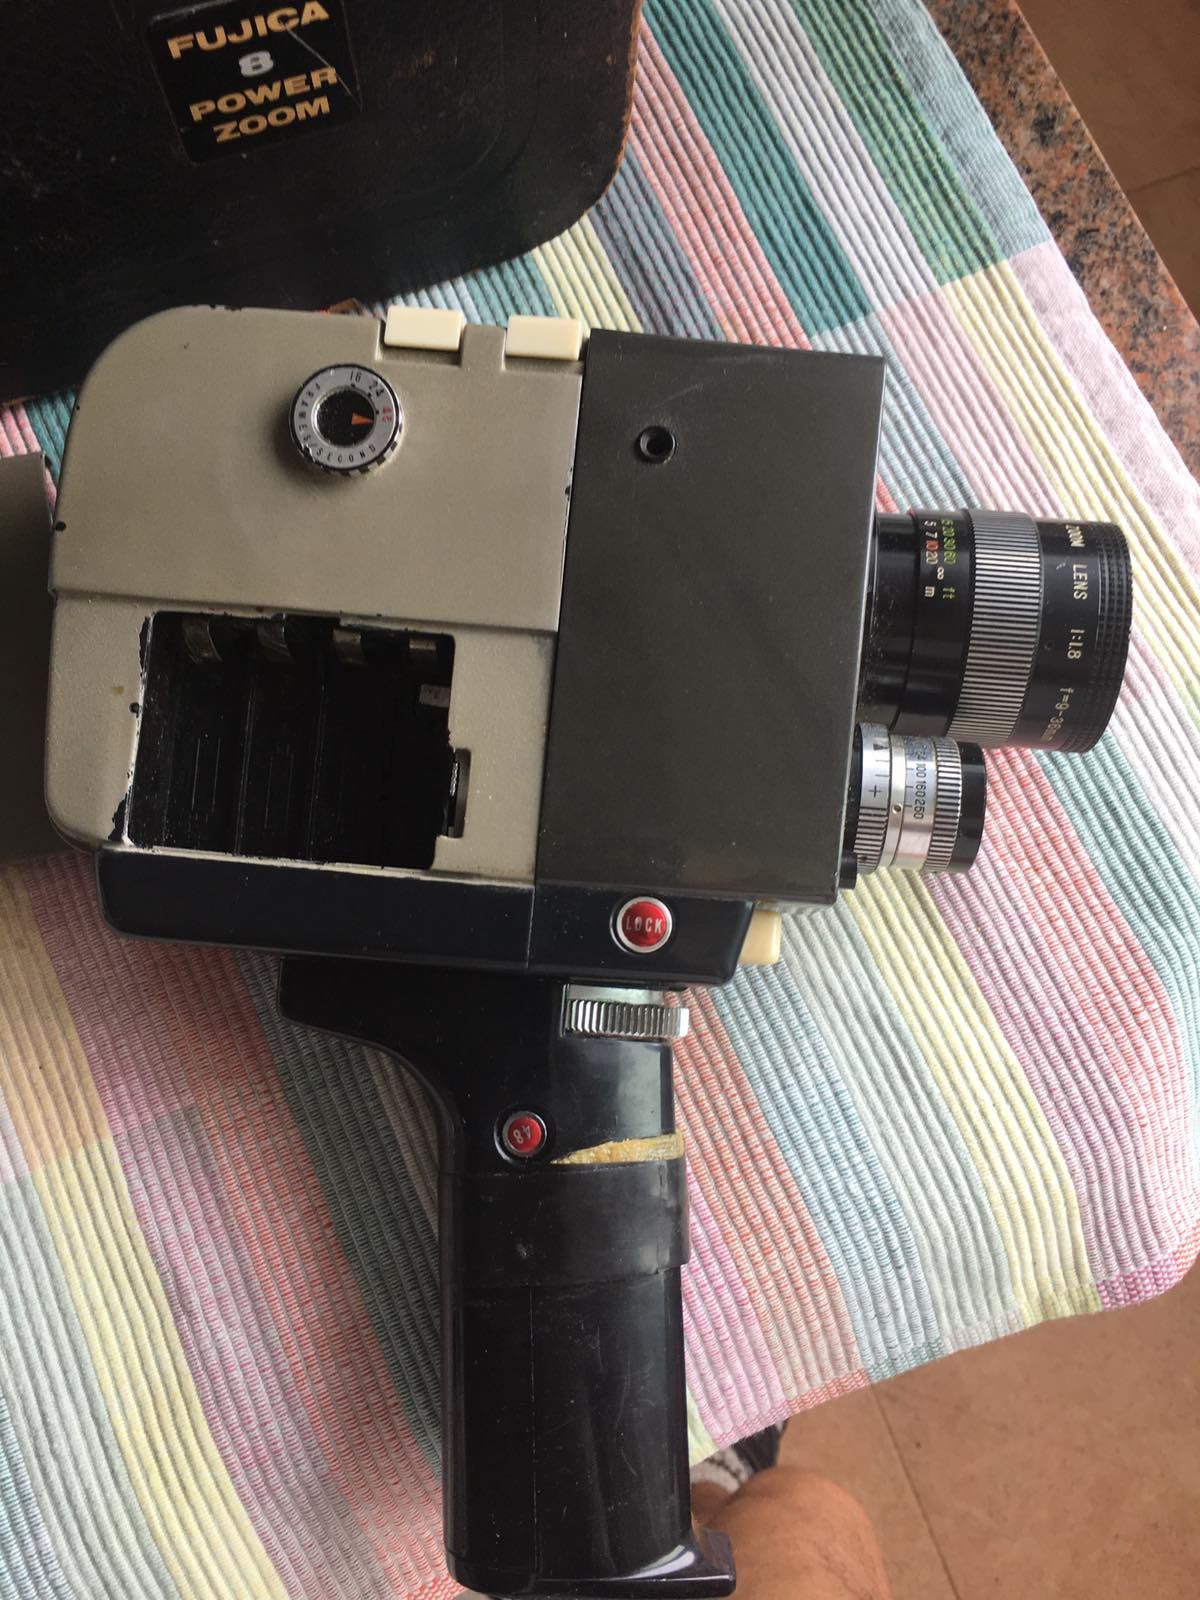 Винтидж камера Fujica 8 Power Zoom